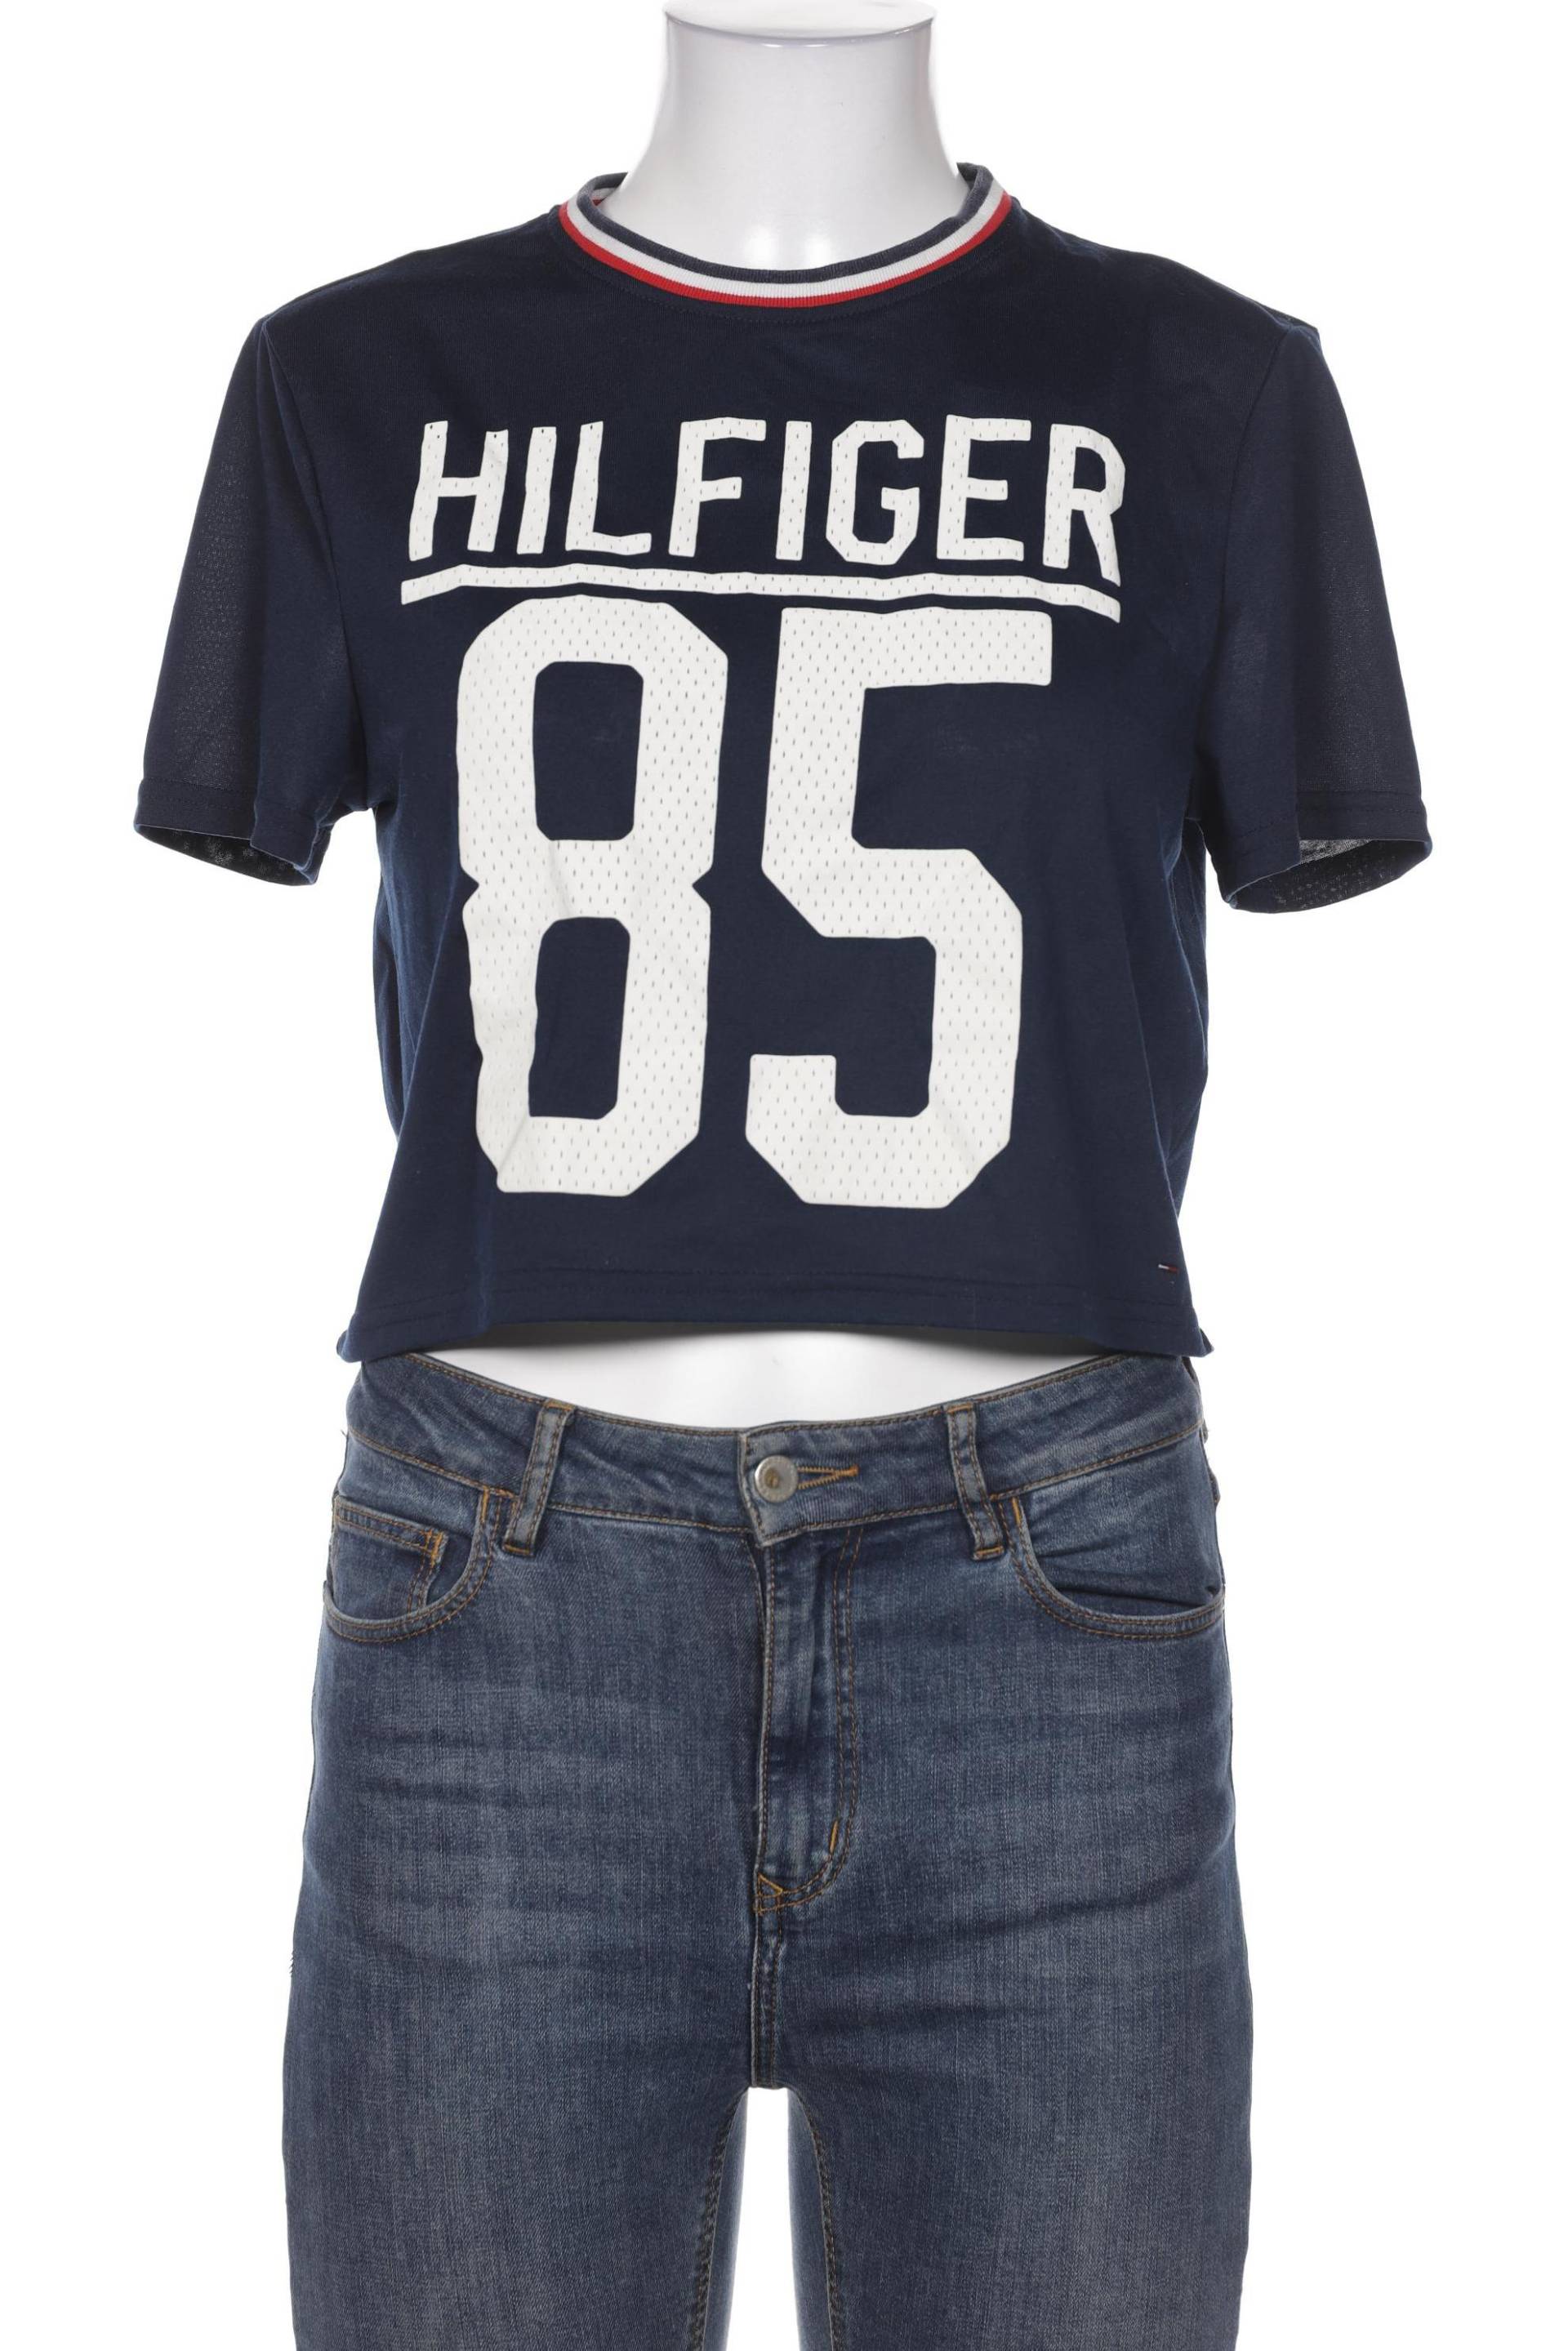 HILFIGER DENIM Damen T-Shirt, marineblau von Hilfiger Denim